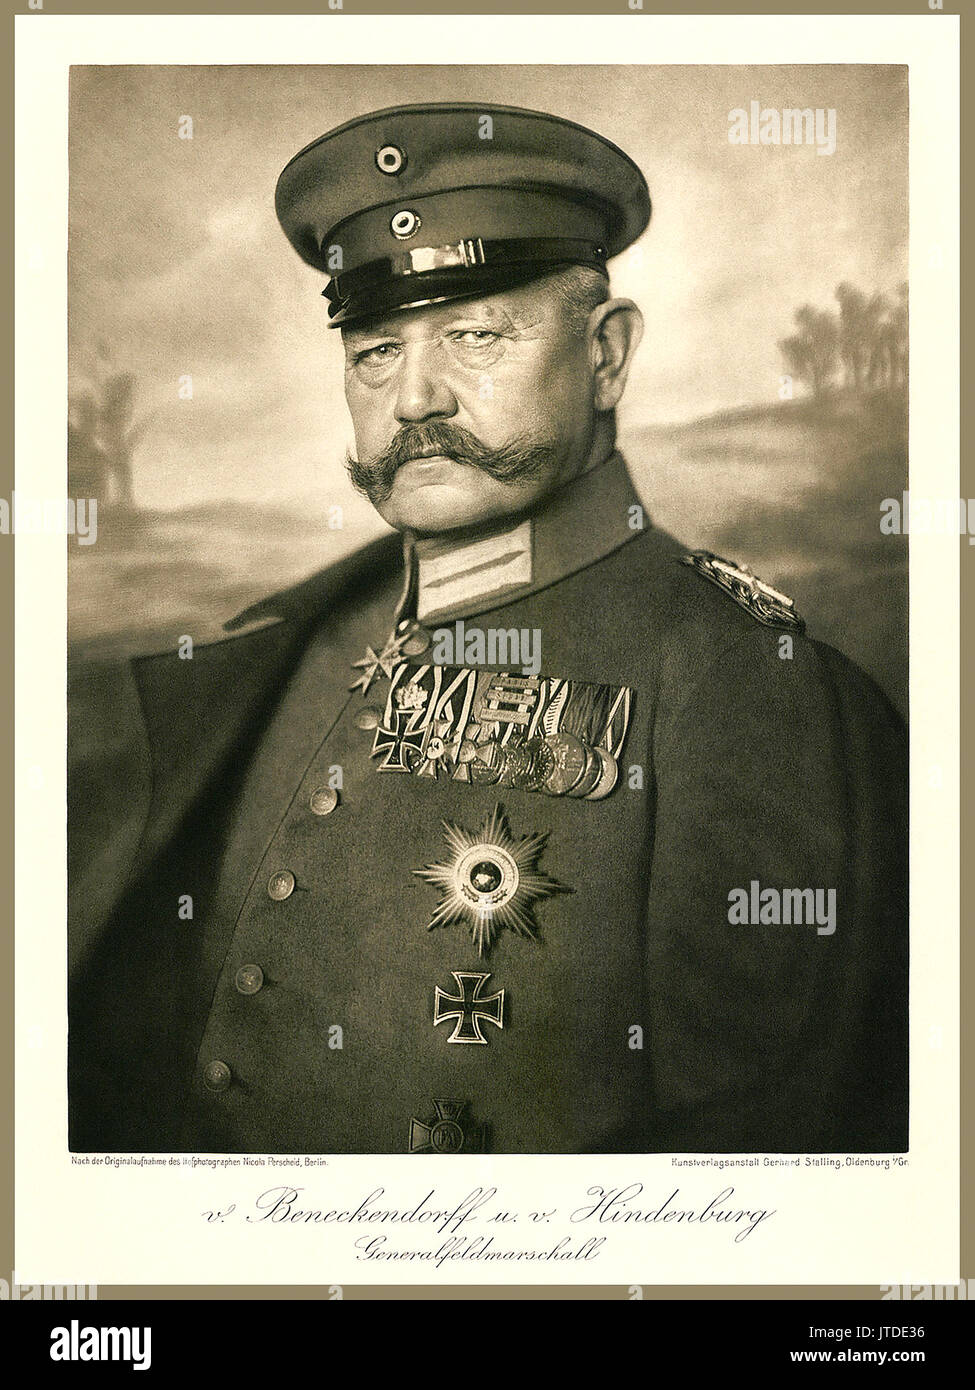 Von Hindenburg studio portrait officiel Ludwig Hans Anton von Beneckendorff und von Hindenburg 2e président de l'Empire allemand République de Weimar réussi par Adolf Hitler Banque D'Images